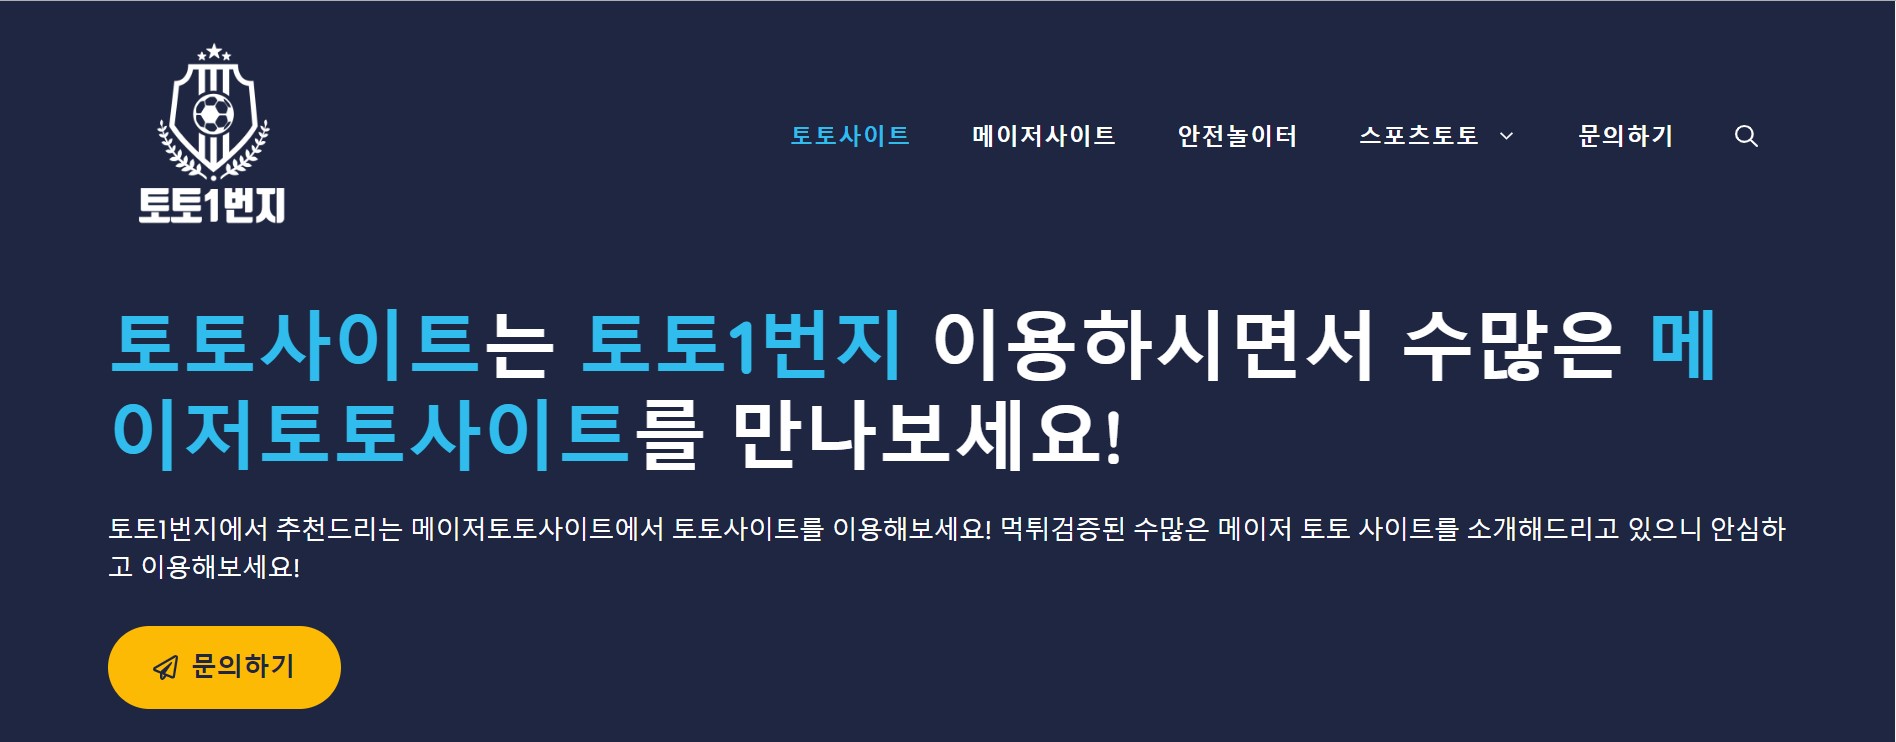 한국의 온라인 스포츠 베팅이 전통 스포츠 도서에 미치는 영향